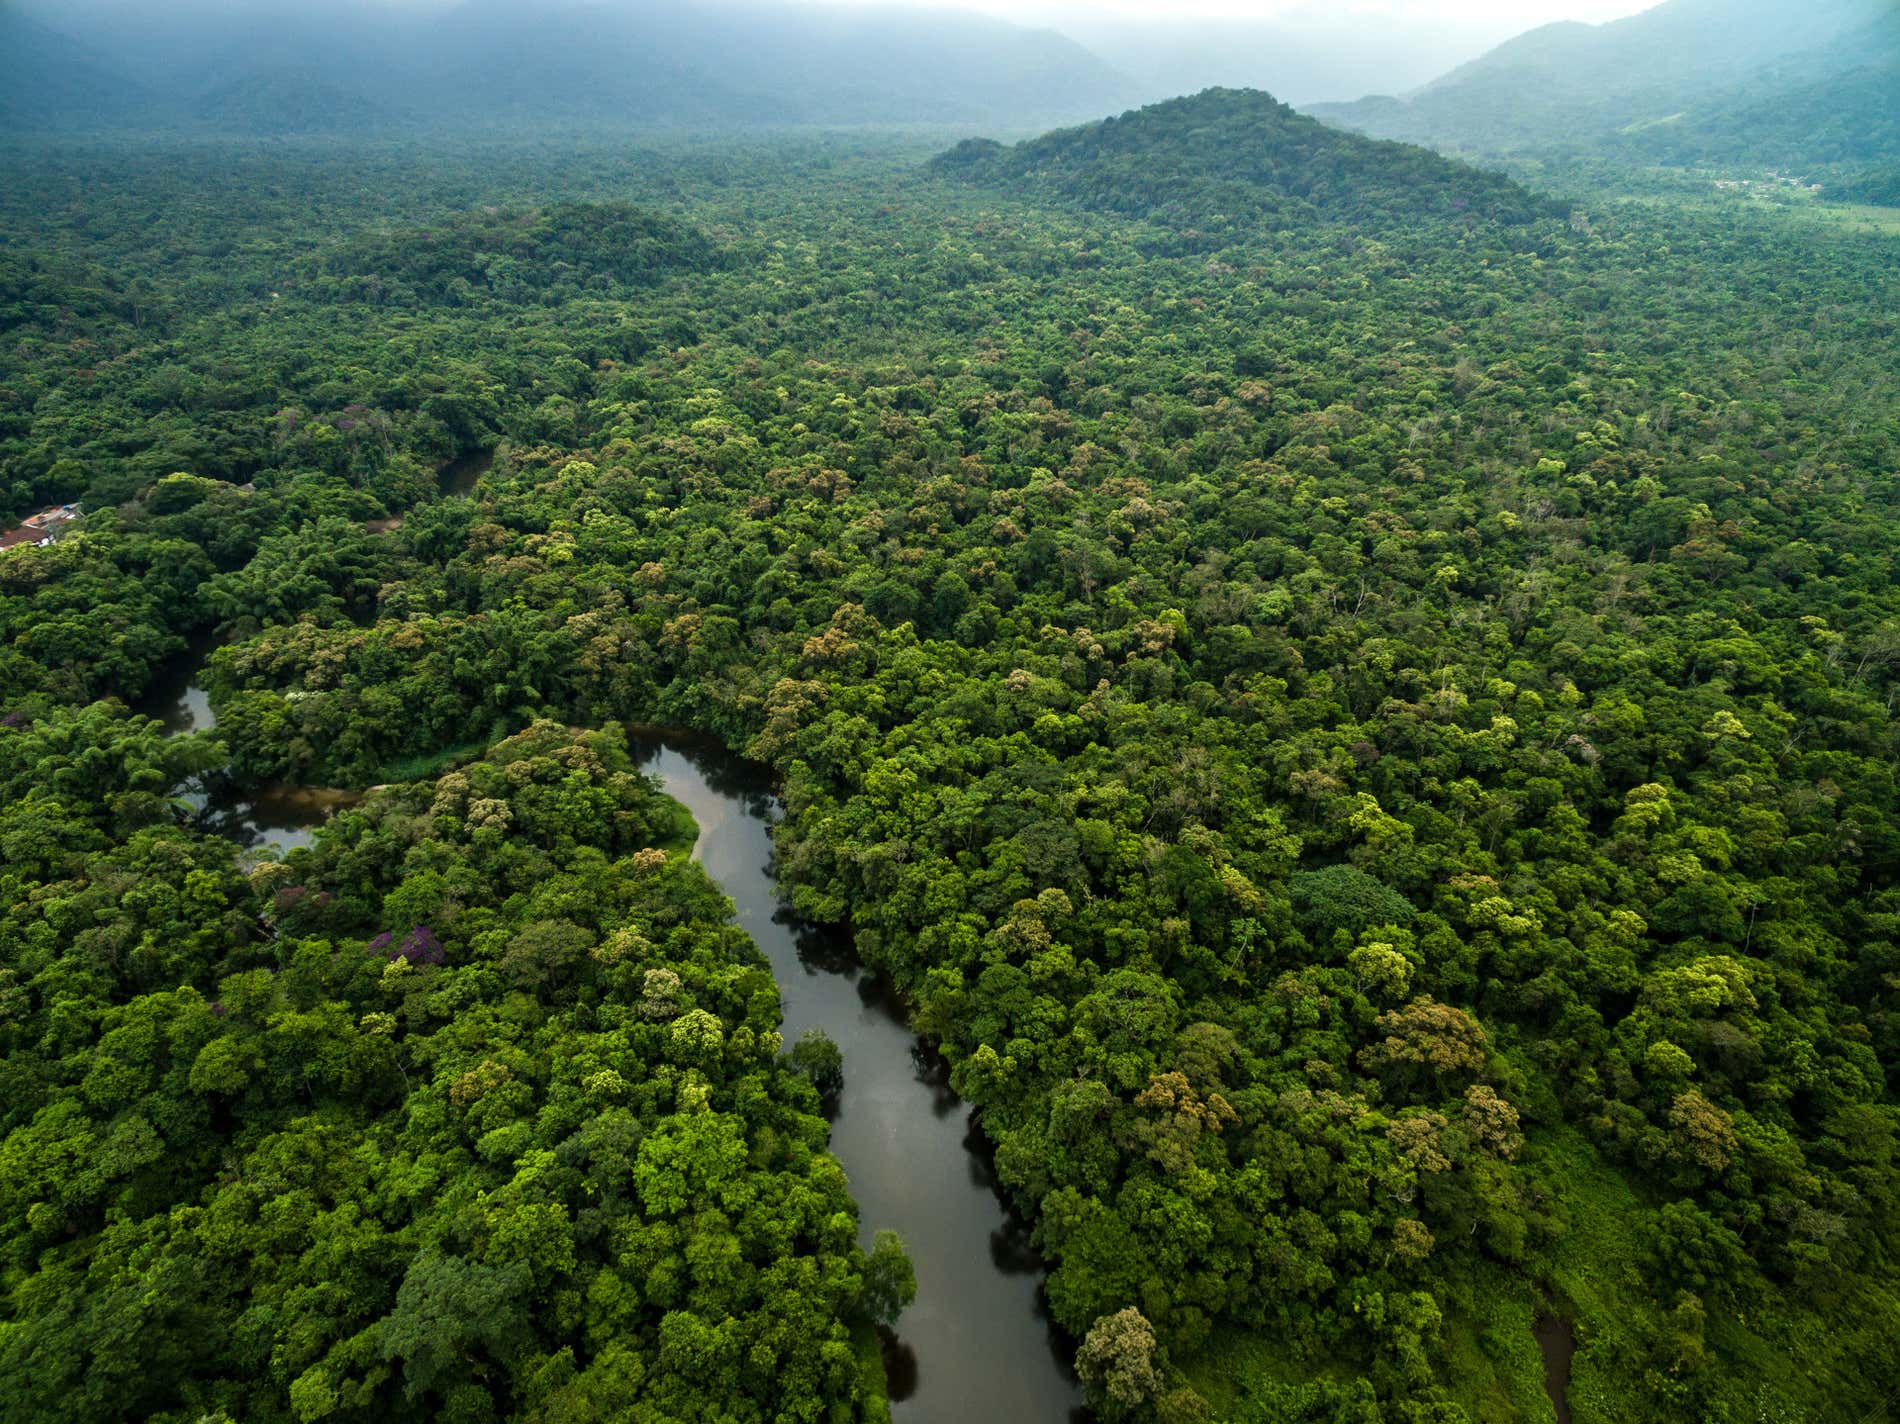 Civitatis Plants Trees In The Amazon Rainforest Civitatis